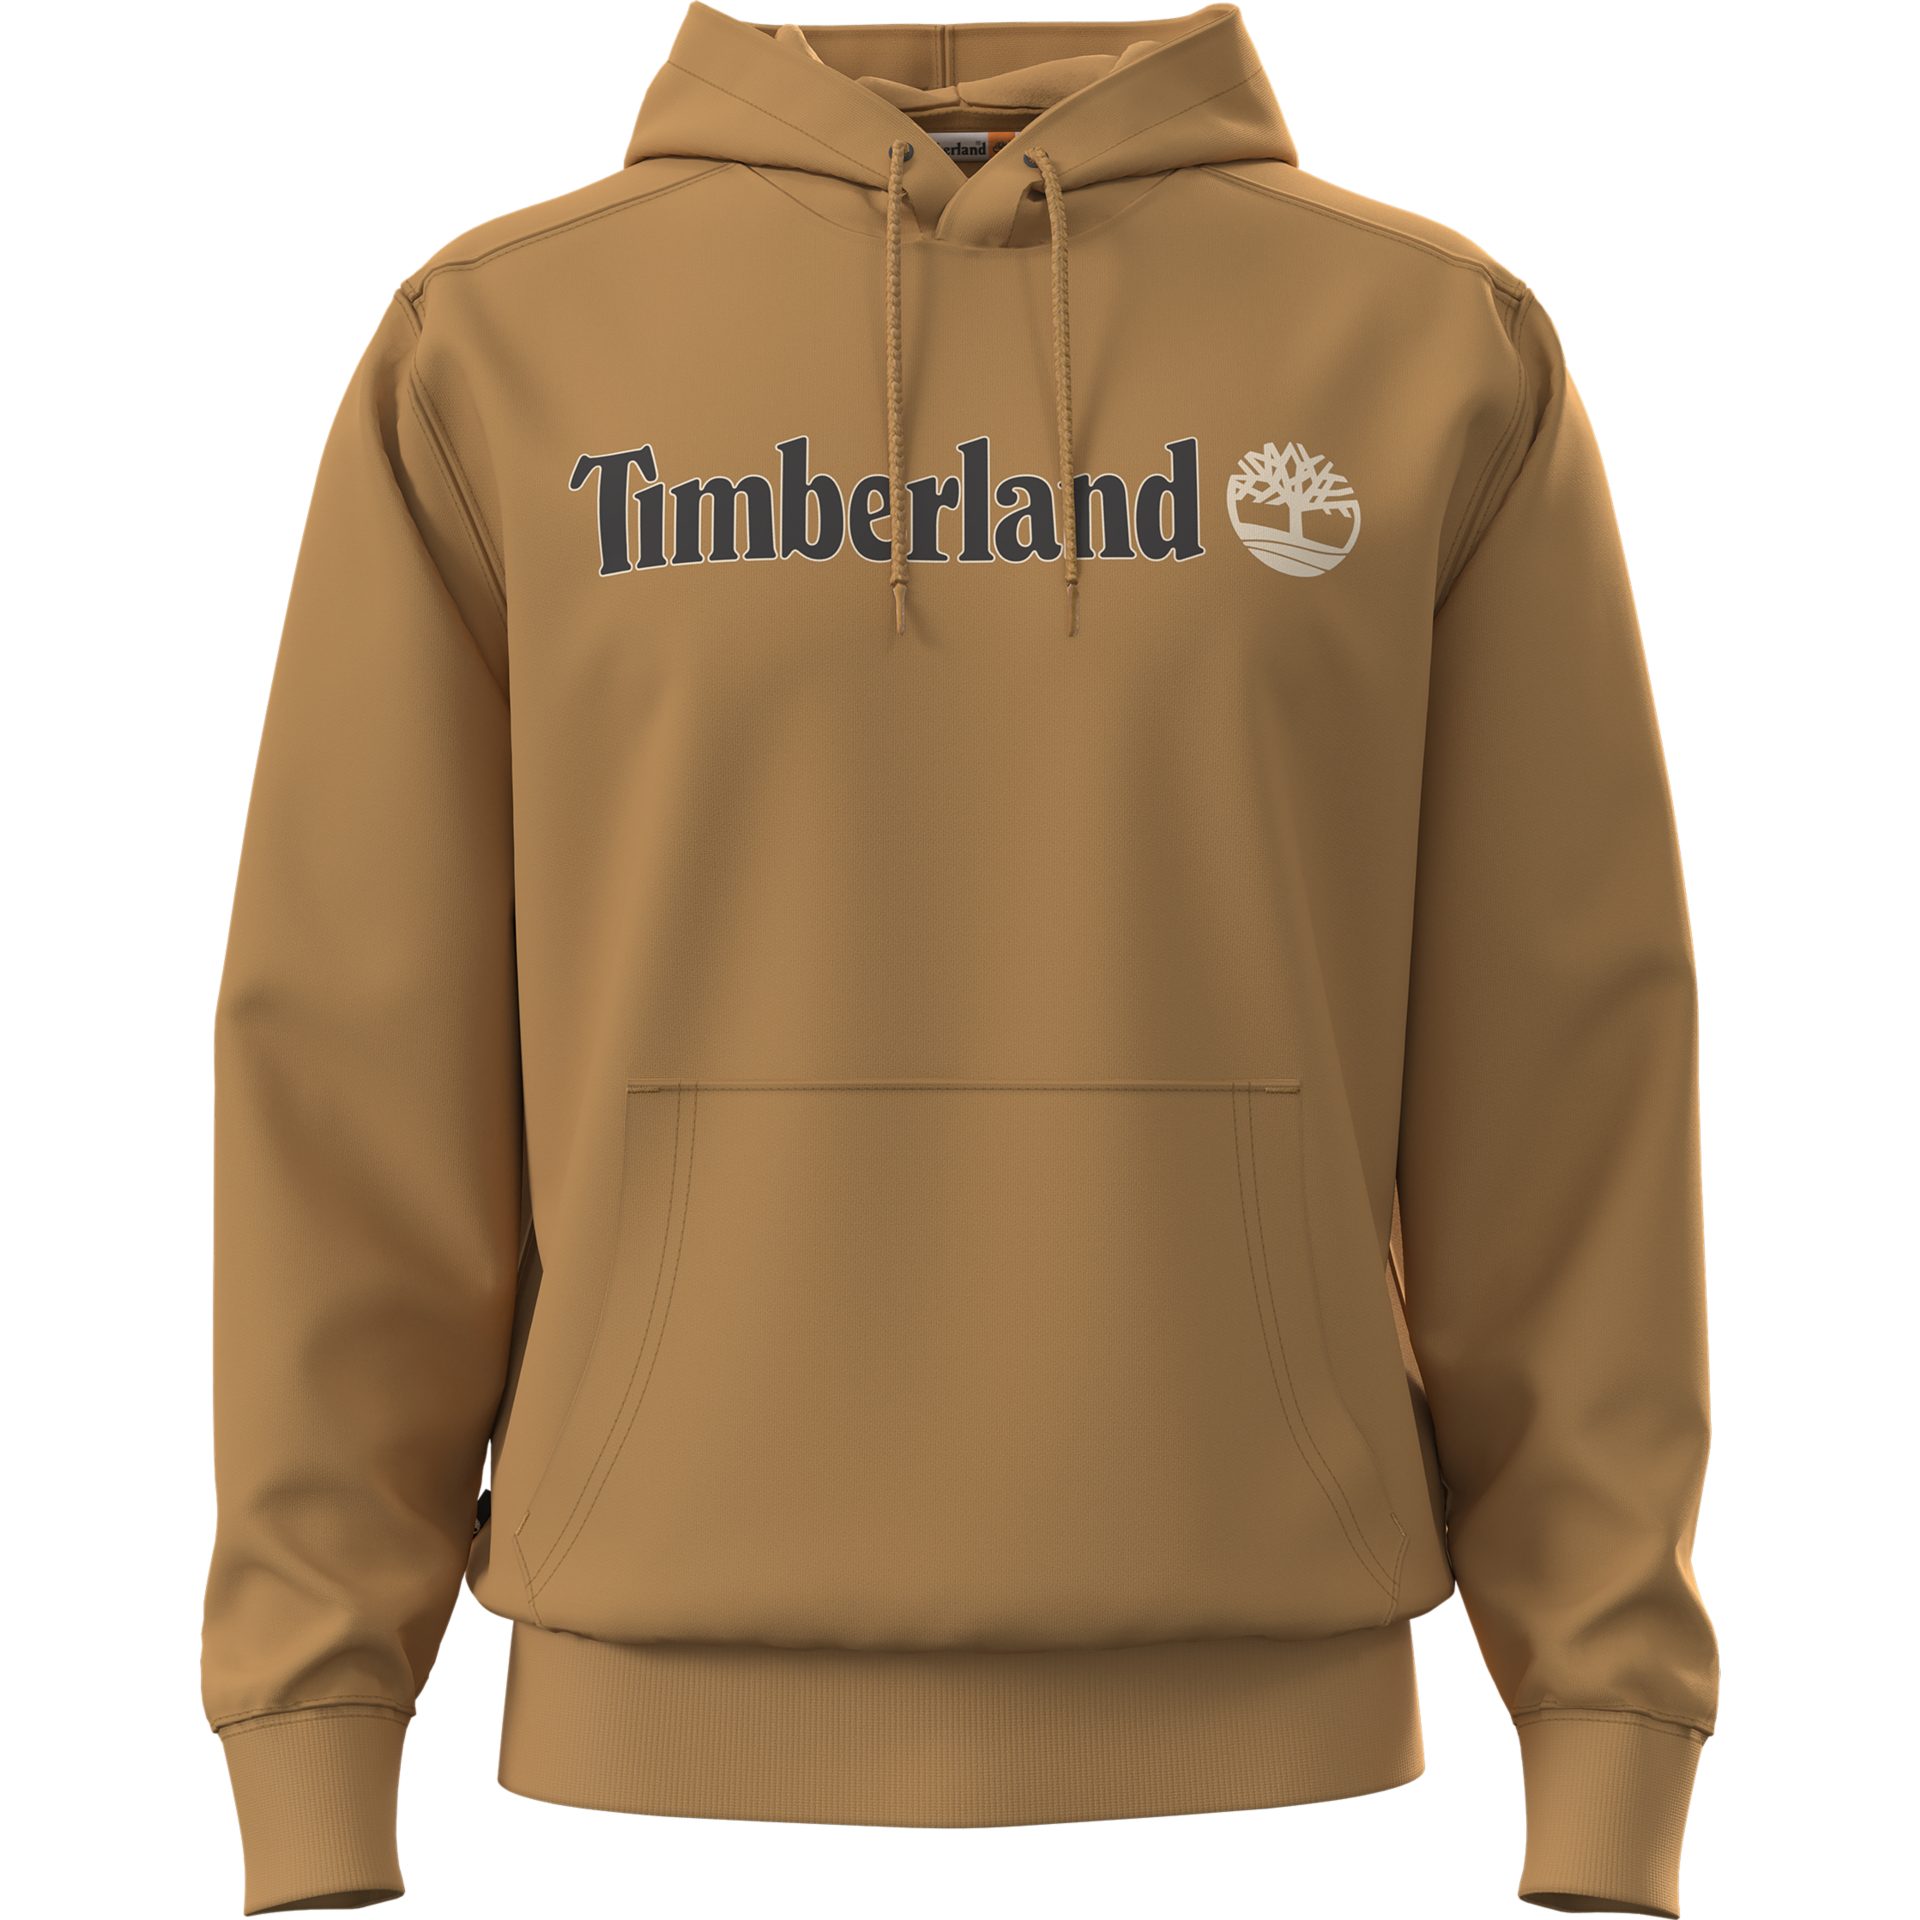 Timberland Herren Sweatshirts online kaufen | OTTO